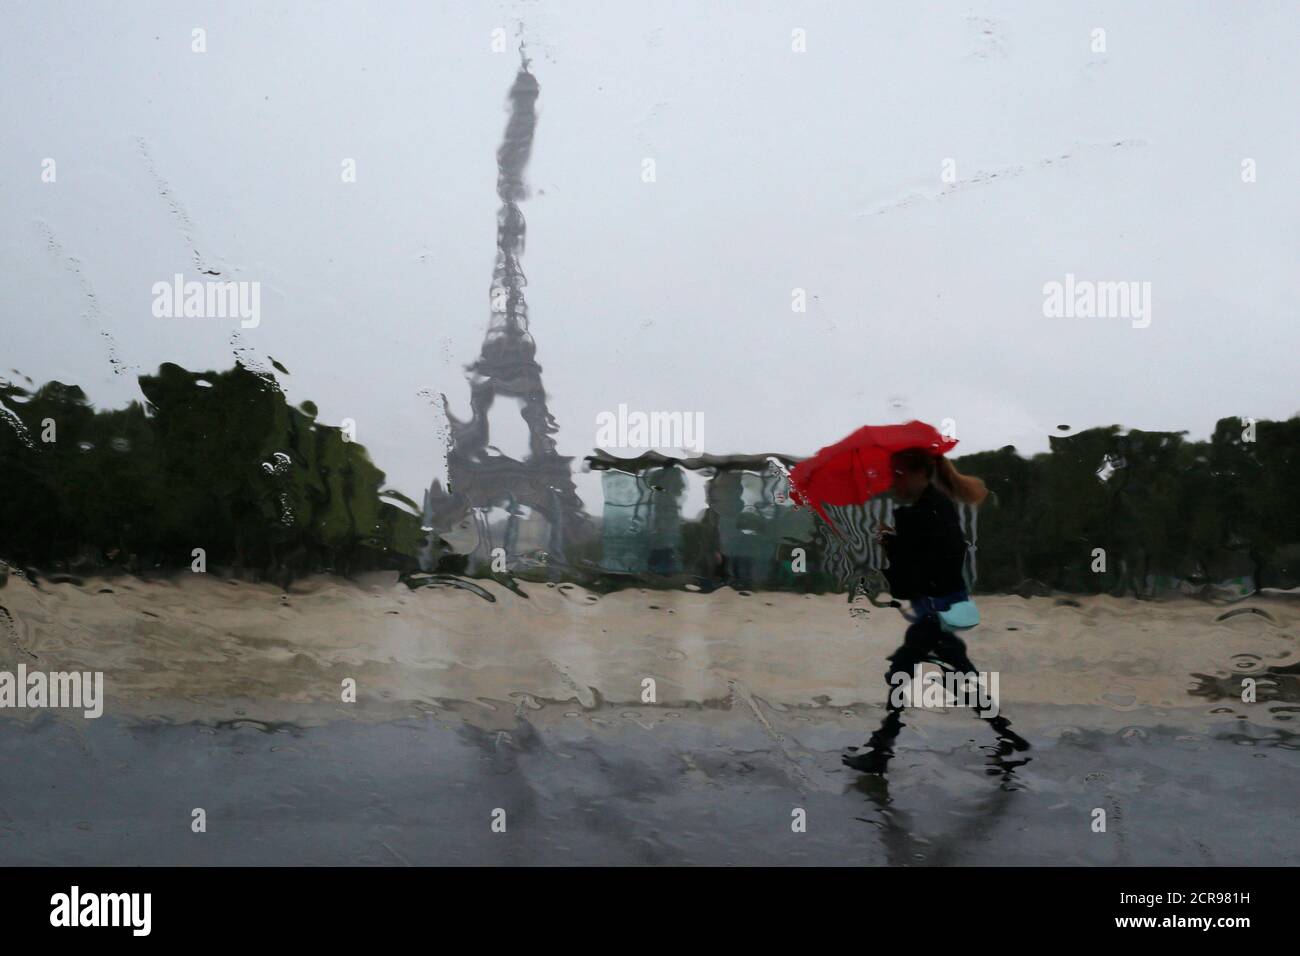 Las gotas de lluvia en la ventana de un coche distorsionan la Torre Eiffel  mientras una mujer se refuta bajo un paraguas rojo durante una ducha de  lluvia en París 13 de